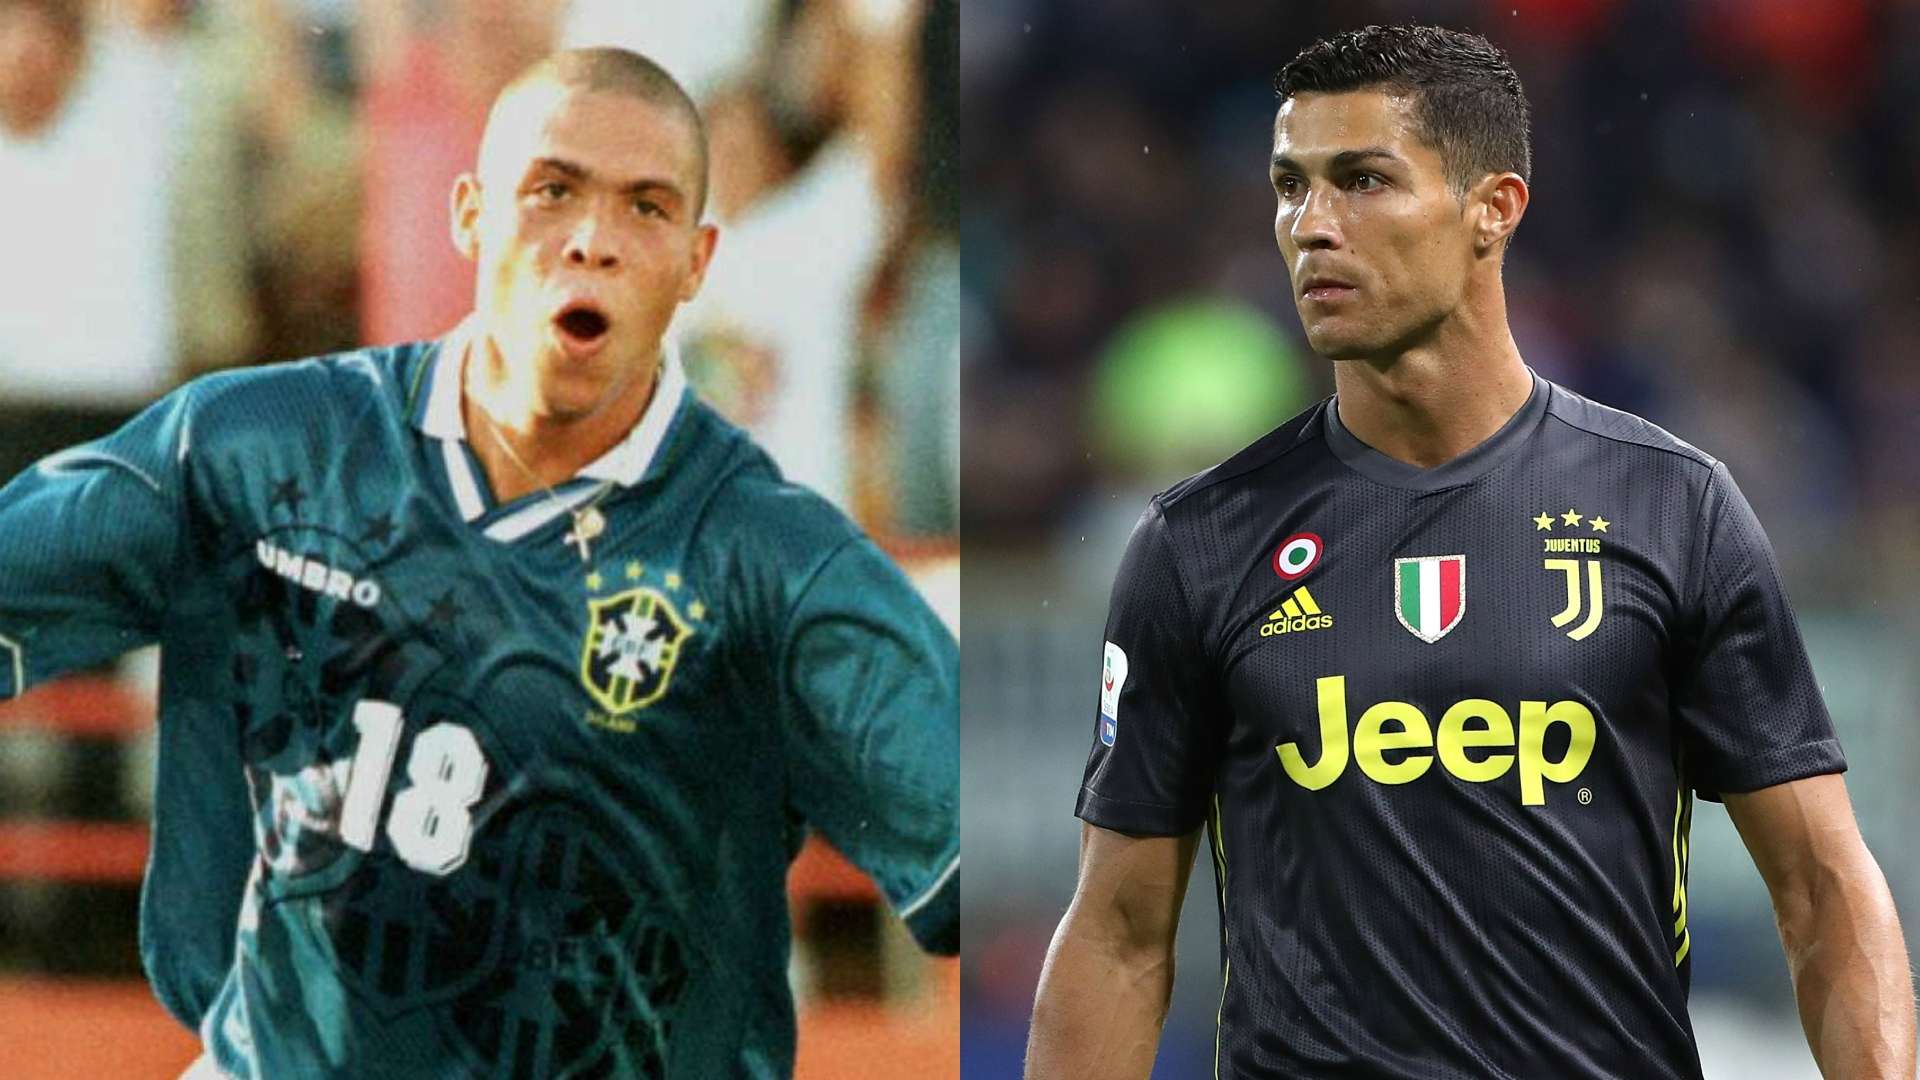 Ronaldo Luiz Nazario da Lima Cristiano Ronaldo collage